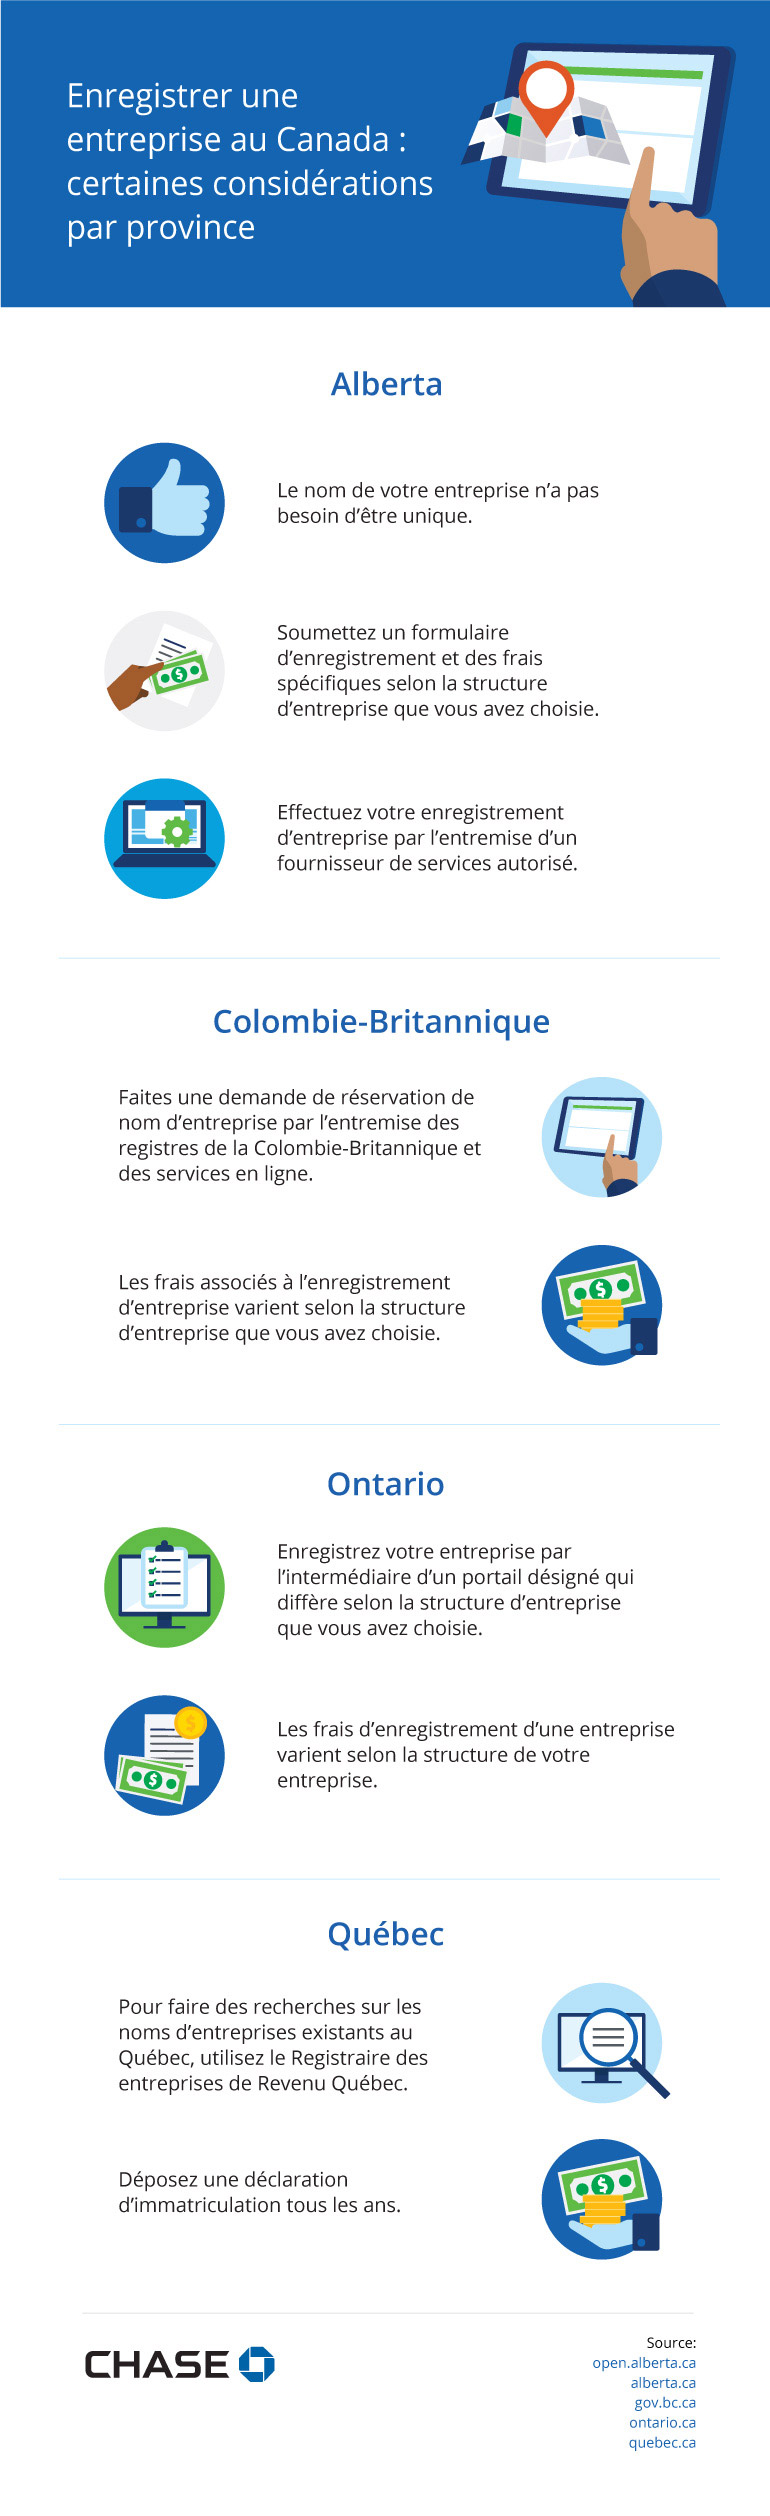 Infographie illustrant les considérations provinciales lors de l’enregistrement d’une entreprise au Canada.